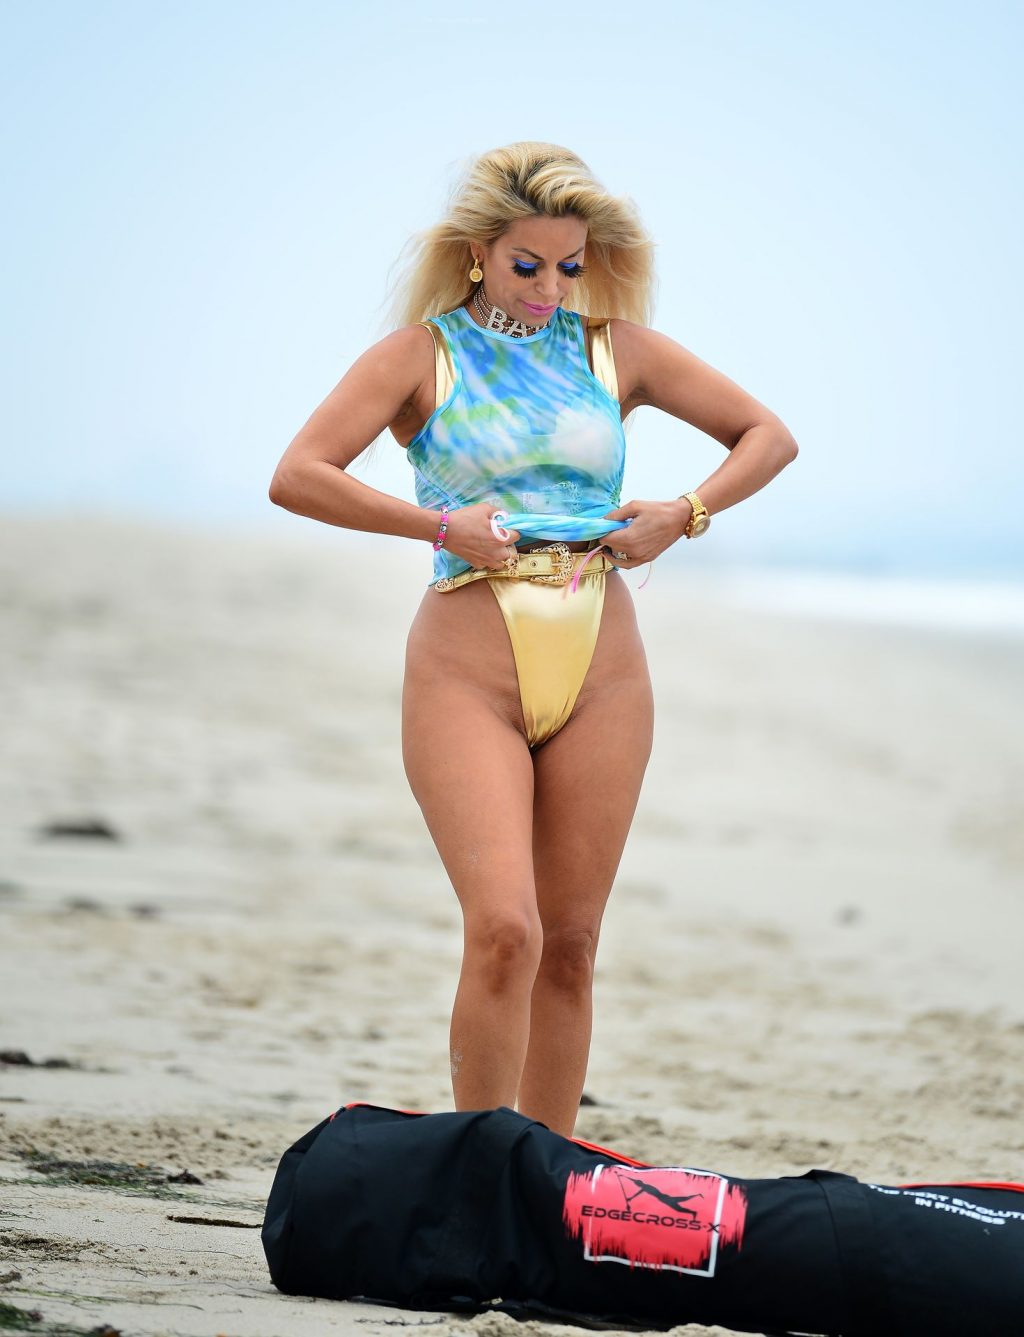 Marcela Iglesias Rocks a Skimpy Bikini During a Beach Workout (27 Photos)